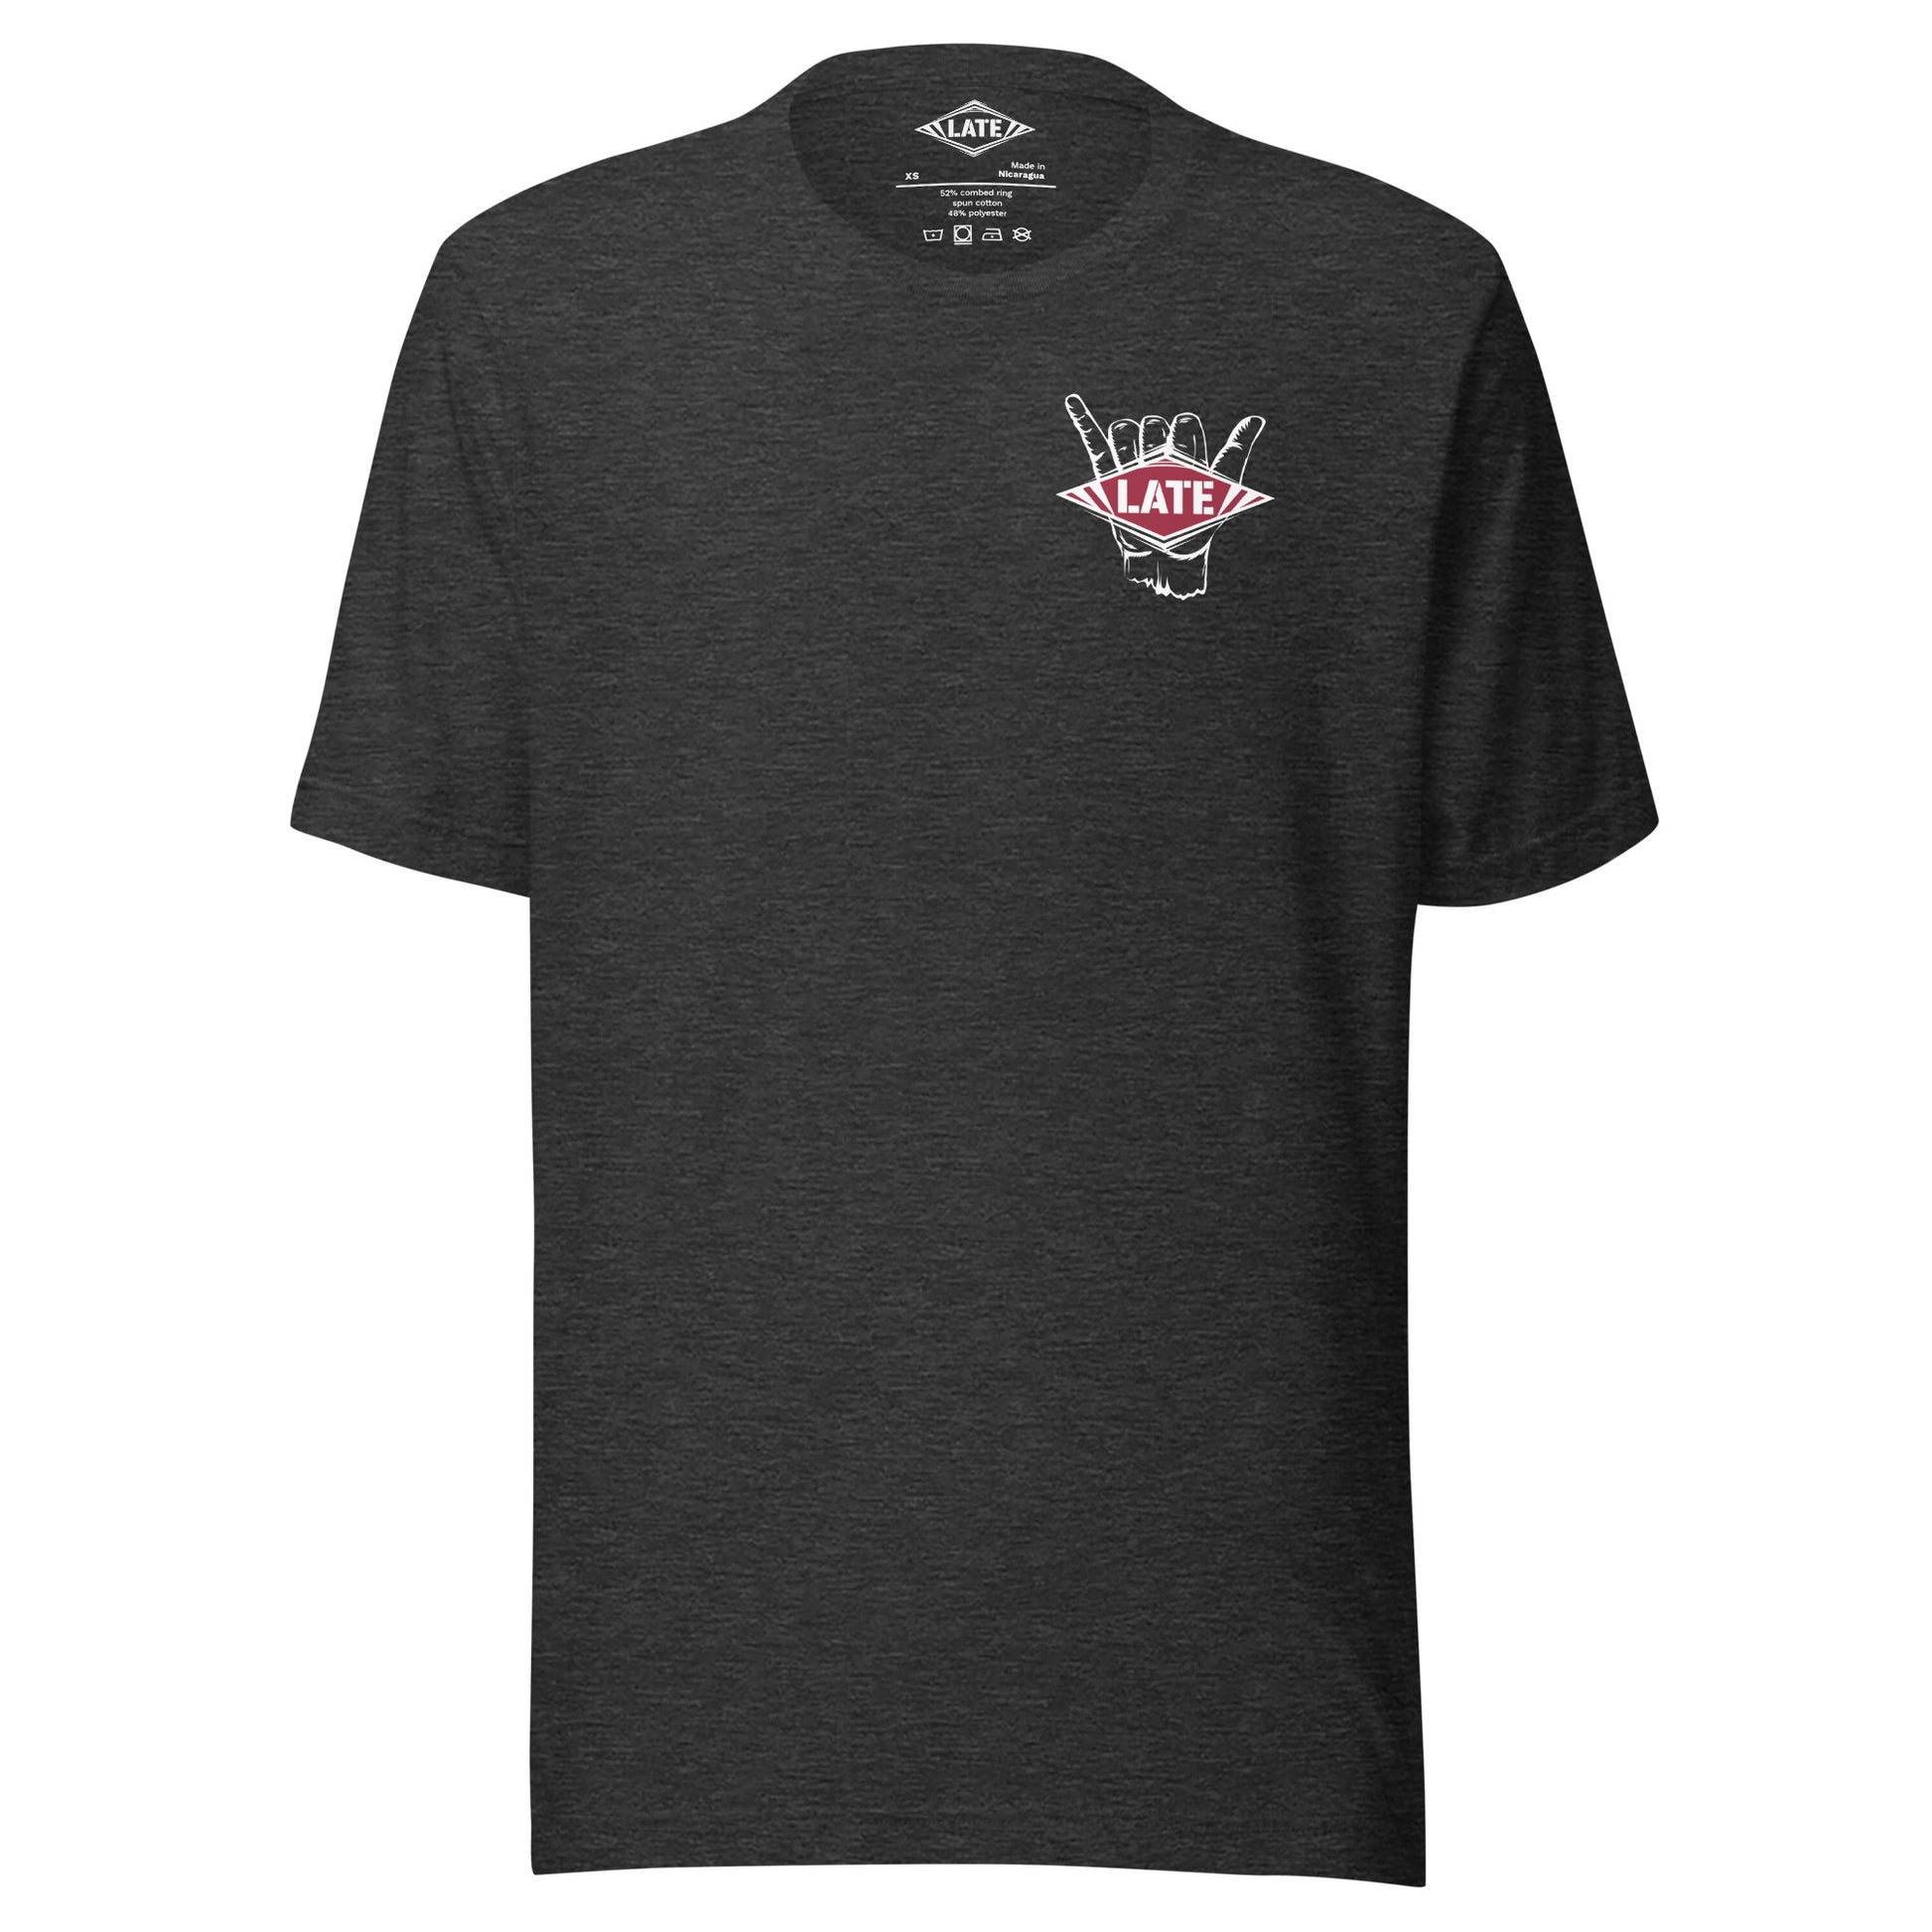 T-Shirt surfing main shaka avec le logo Late face avant t-shirt unisex couleur gris foncé